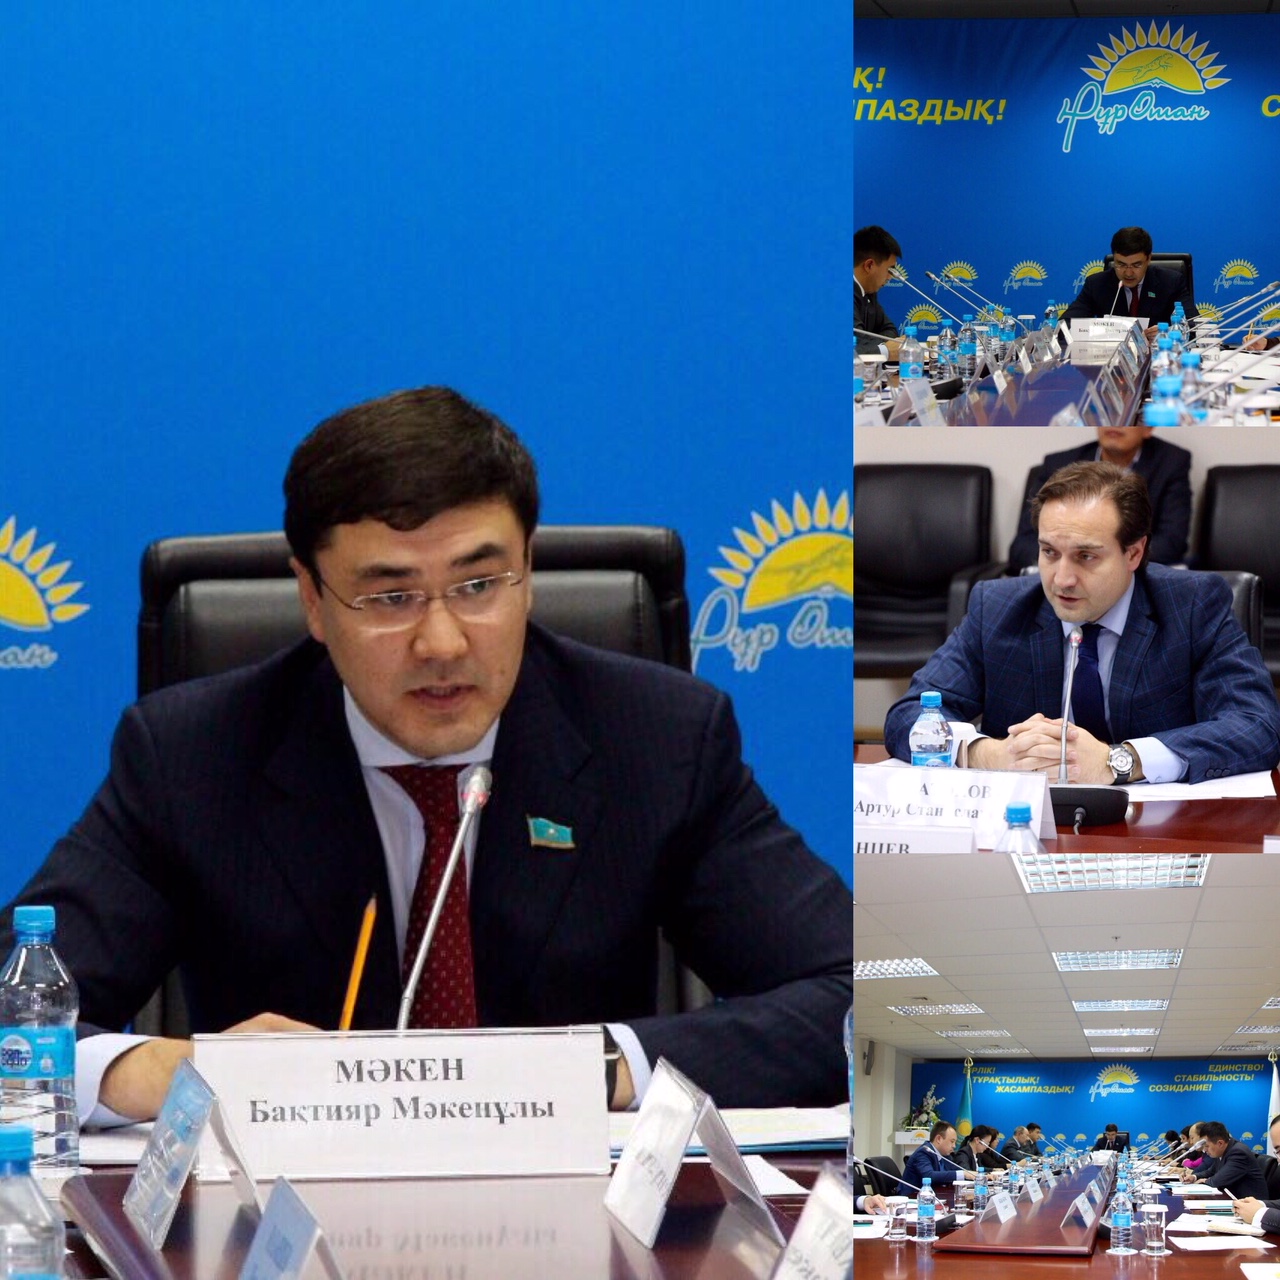 Заседание комиссии по направлению «Поддержка молодежи»  Предвыборной Программы партии Нұр Отан «Казахстан-2021: Единство. Стабильность. Созидание»